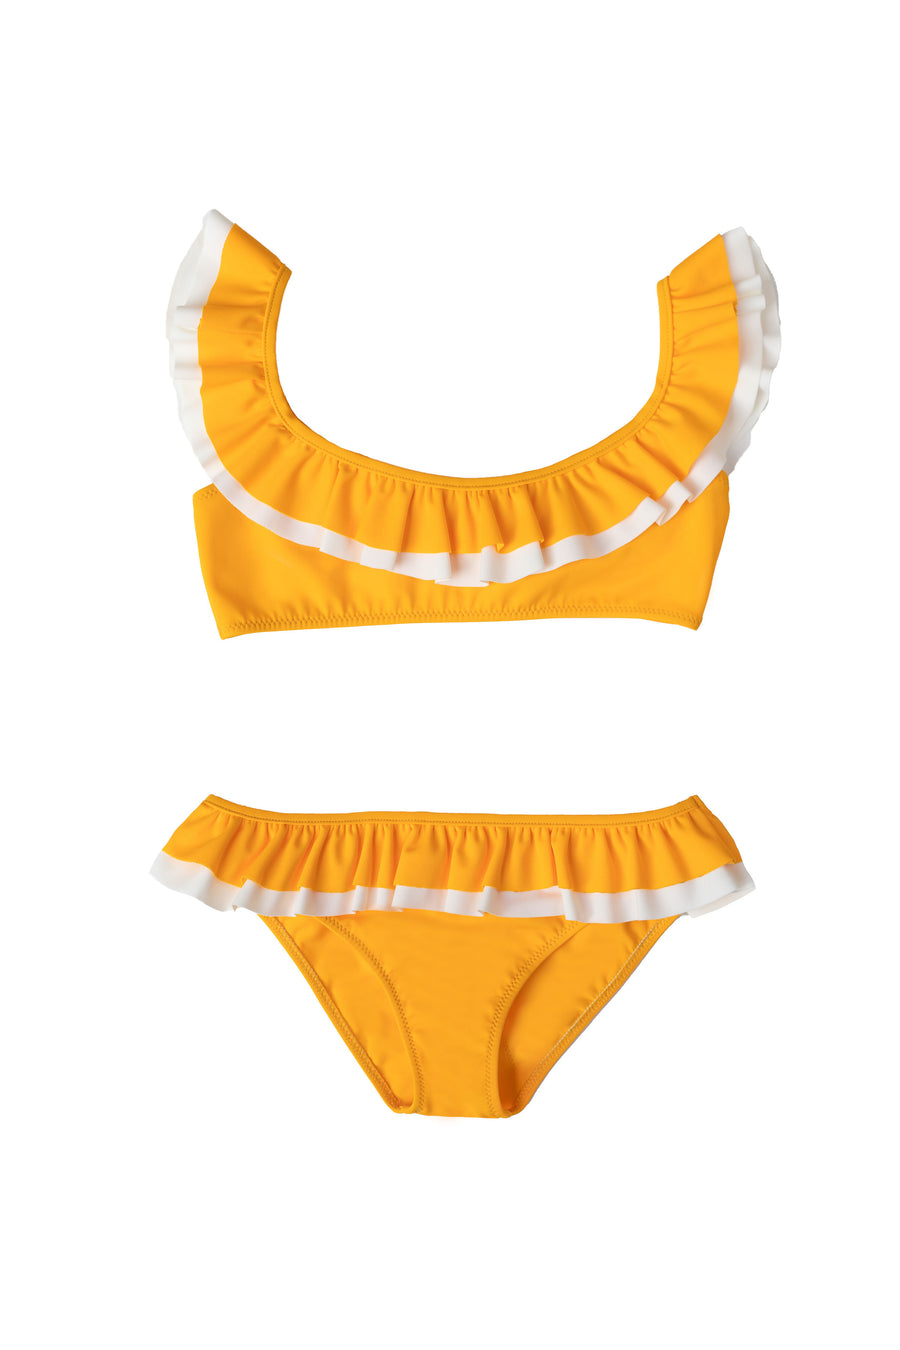 KATE bikini  - mango yellow FOLPETTO - HOWTOKiSSAFROG